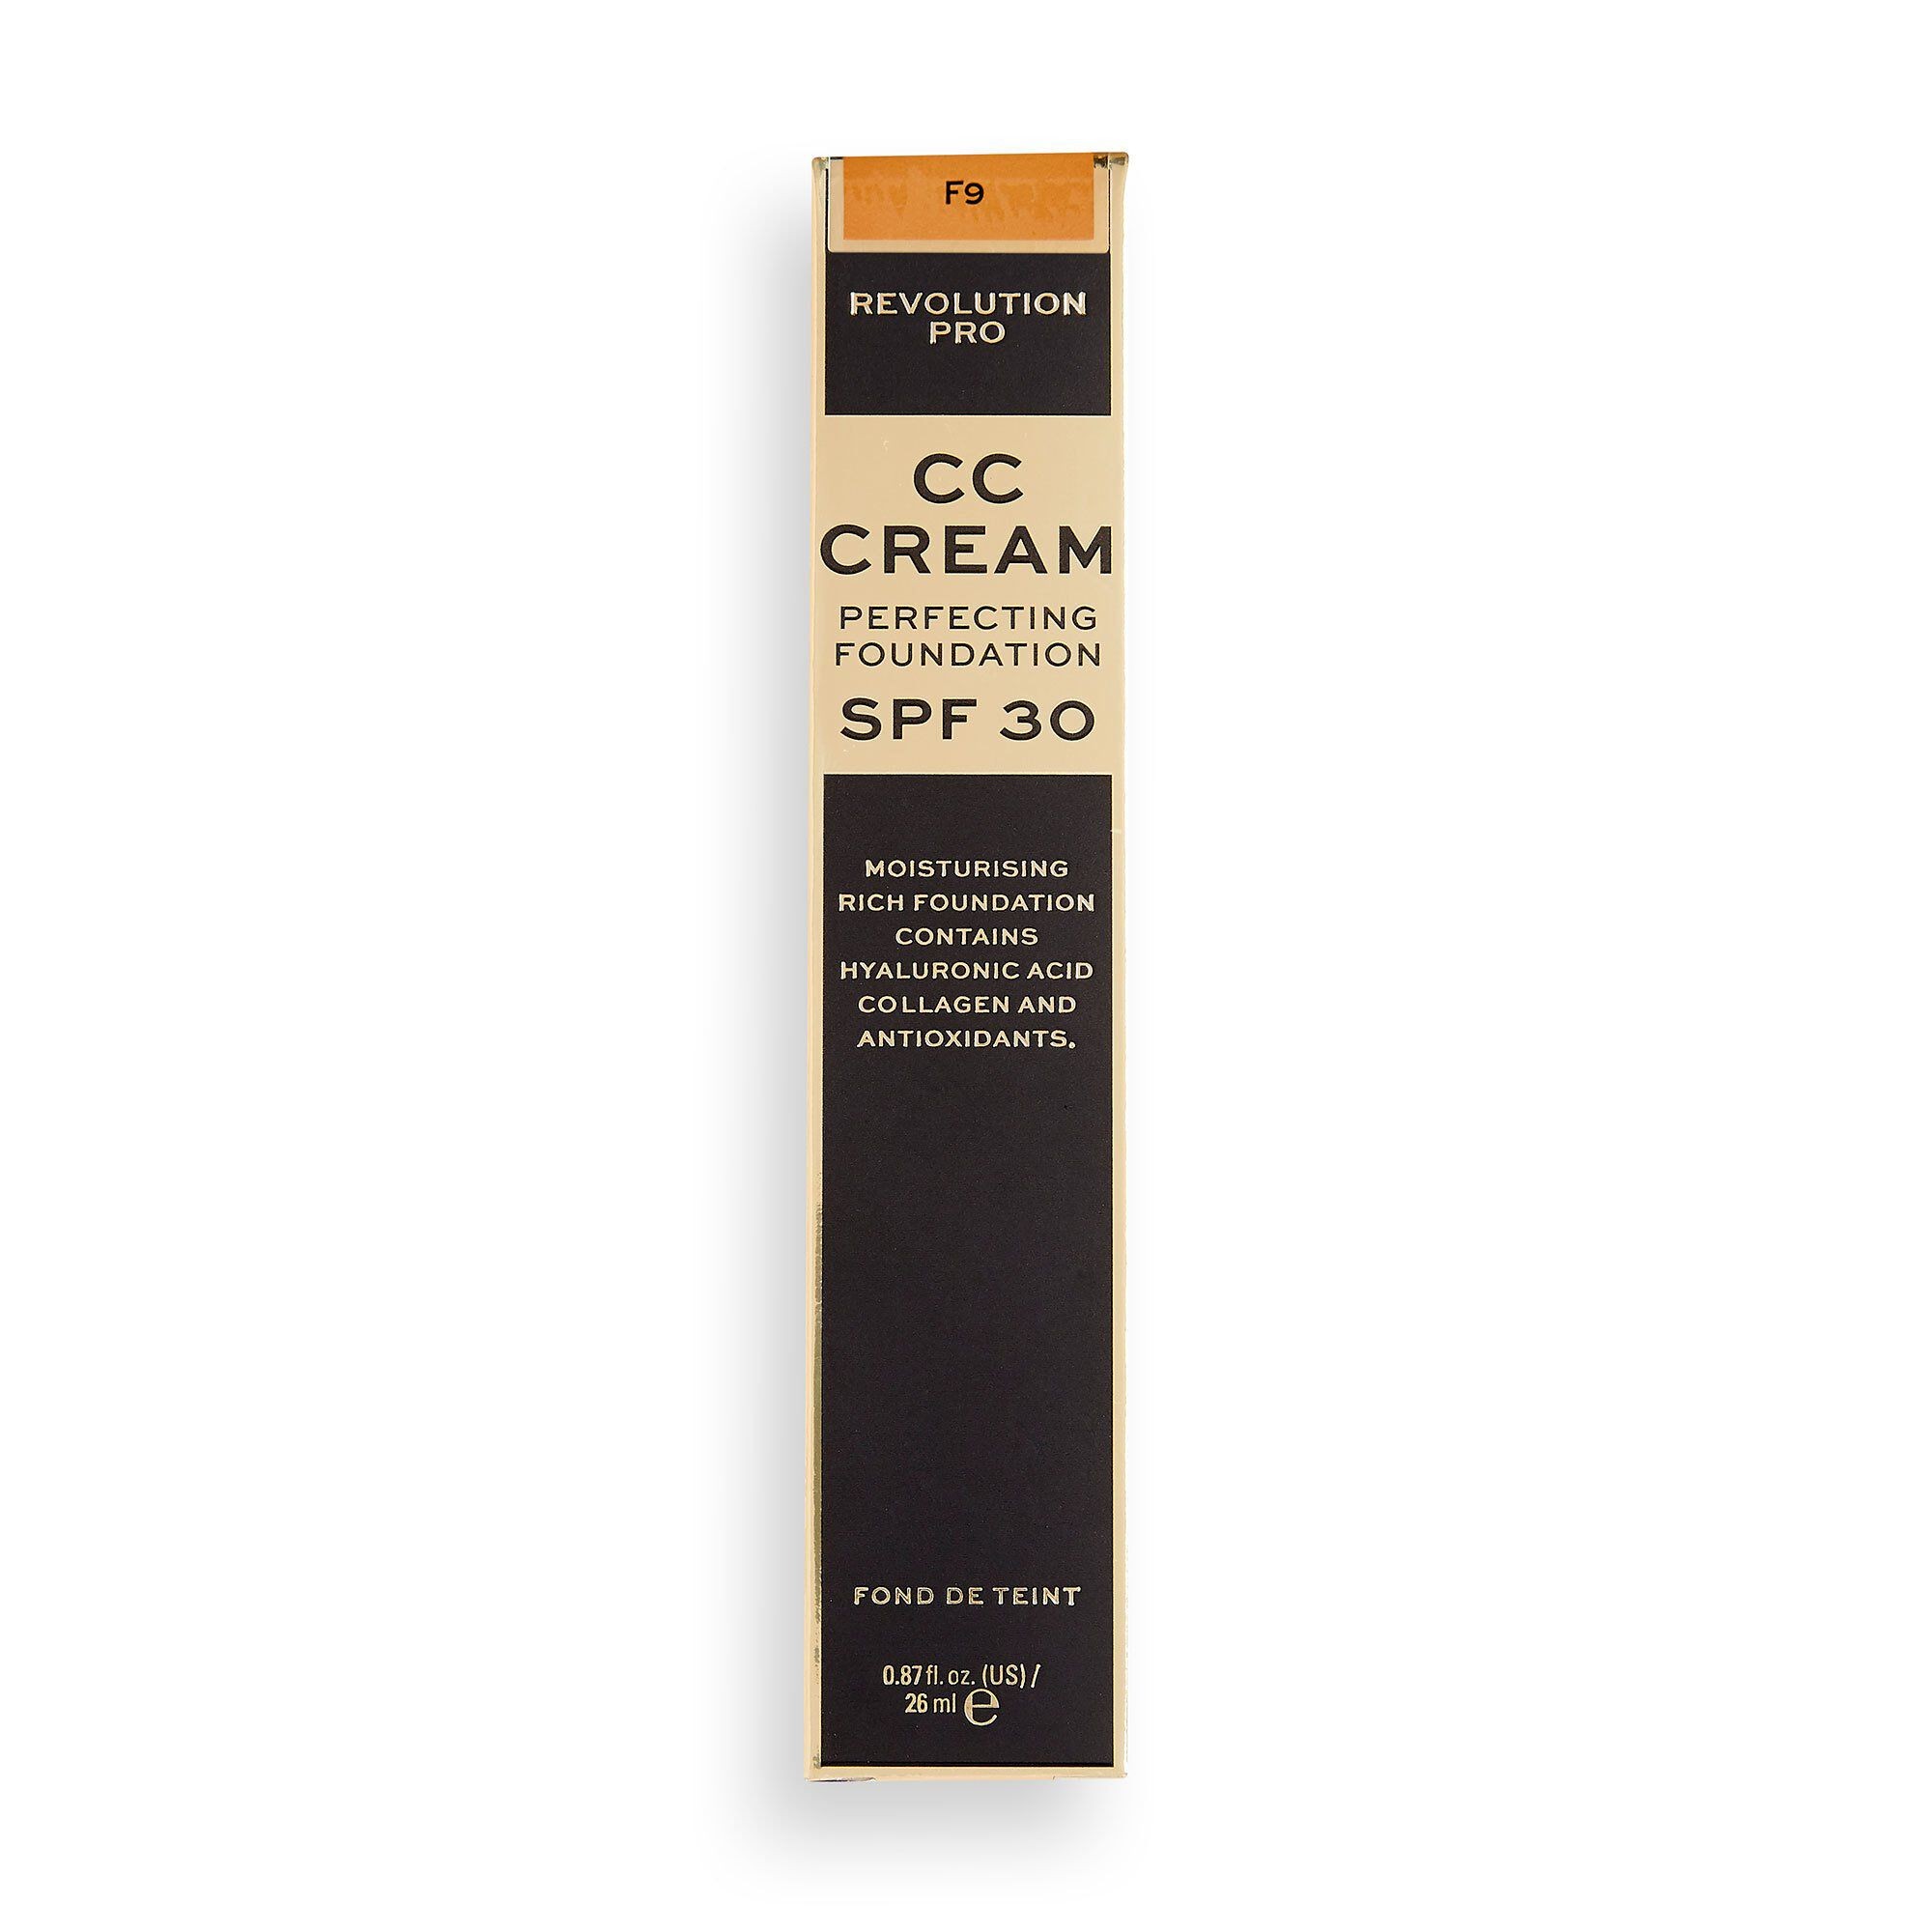 CC Cream - Perfecting Foundation